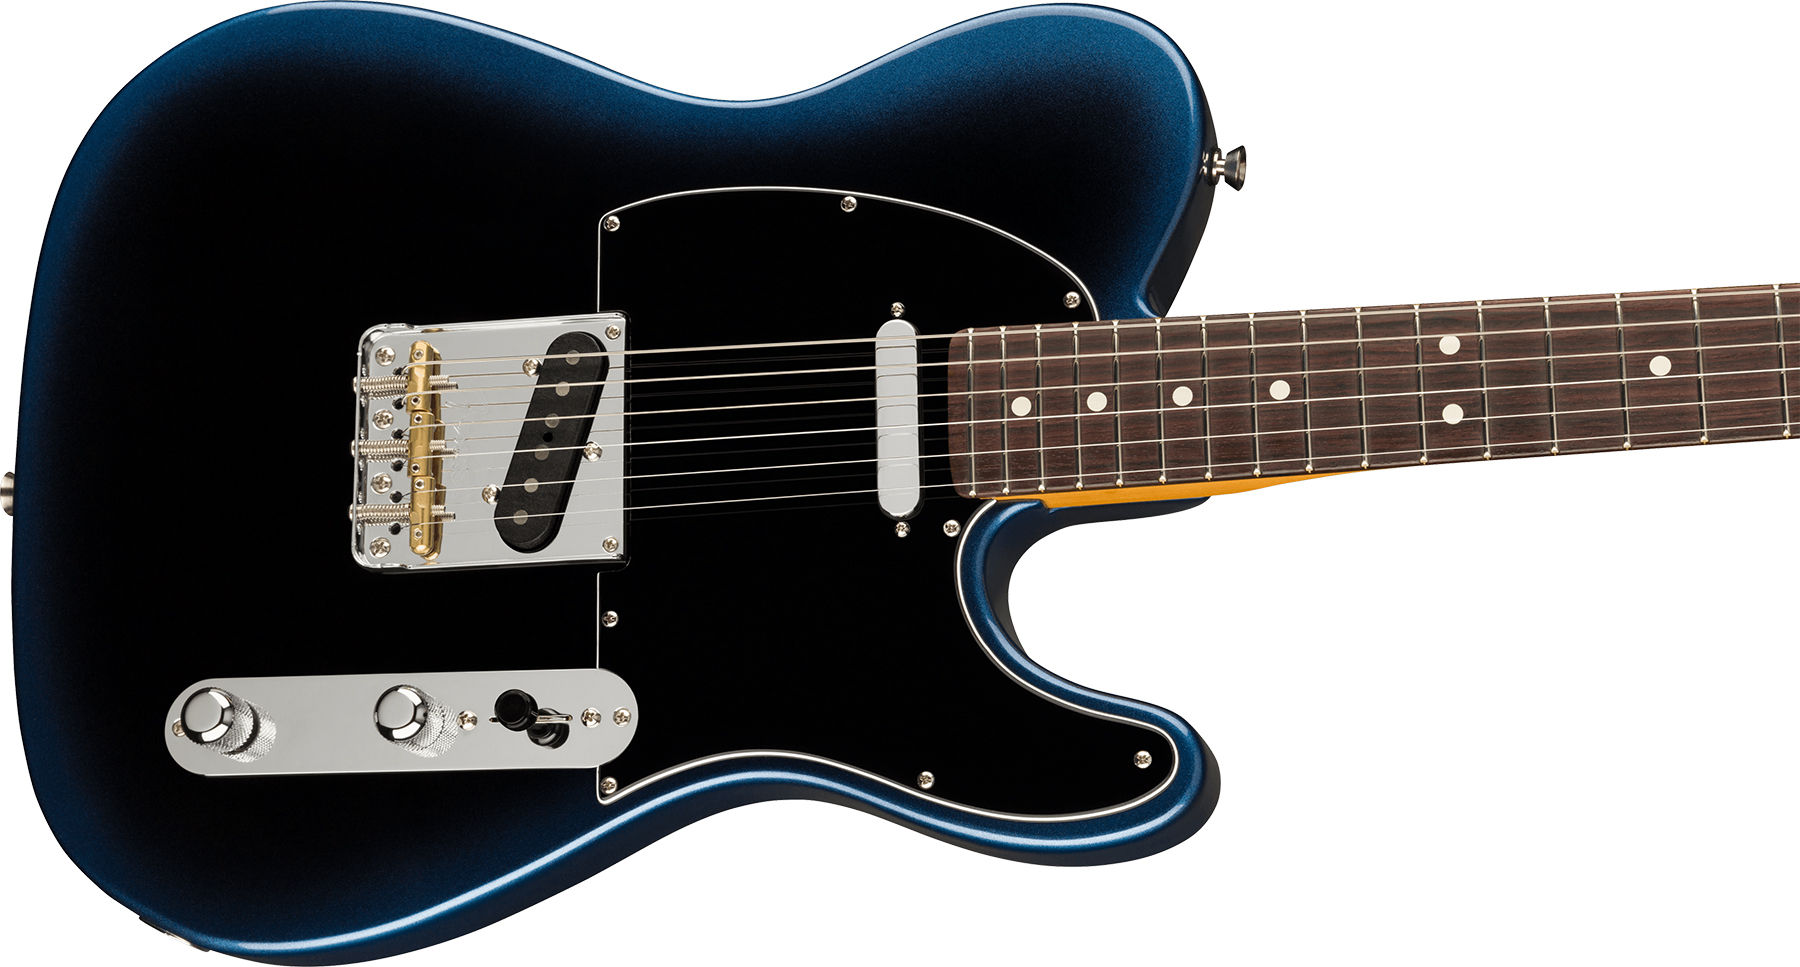 Fender Tele American Professional Ii Usa Rw - Dark Night - Guitarra eléctrica con forma de tel - Variation 2